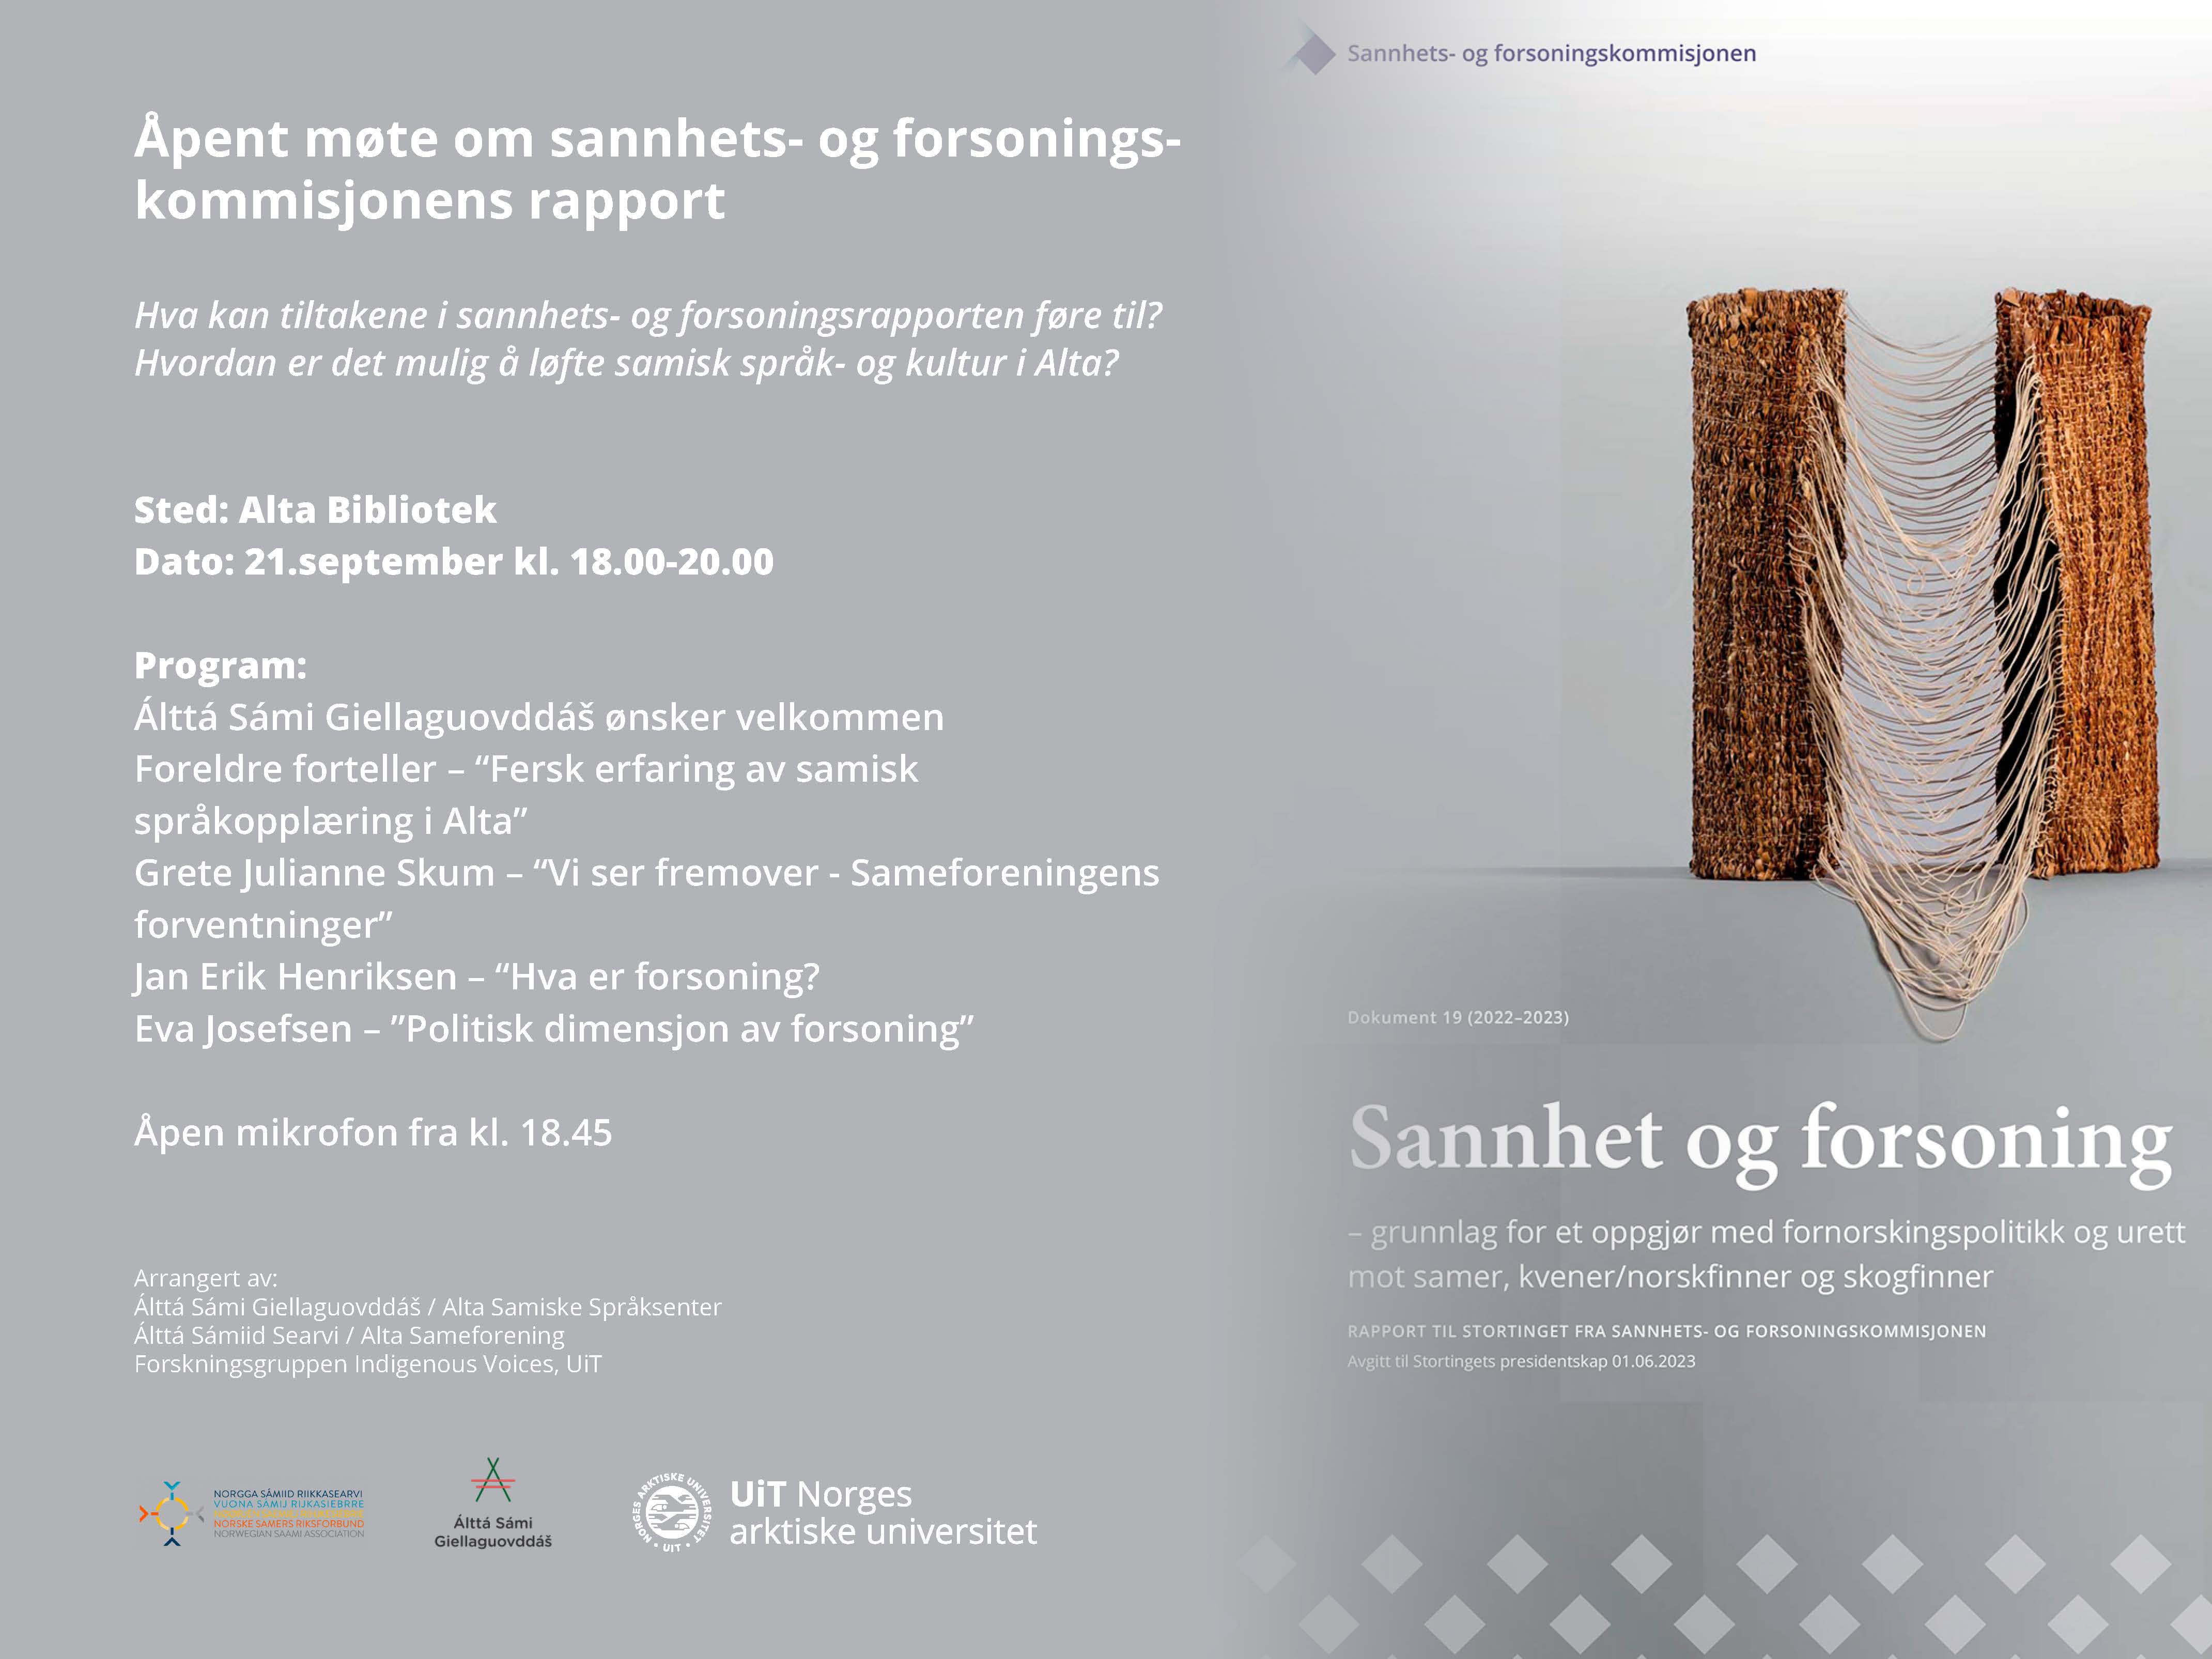 Illustrasjons-/bannerbilde for Åpent møte om Sannhets- og forsoningskommisjonens rapport